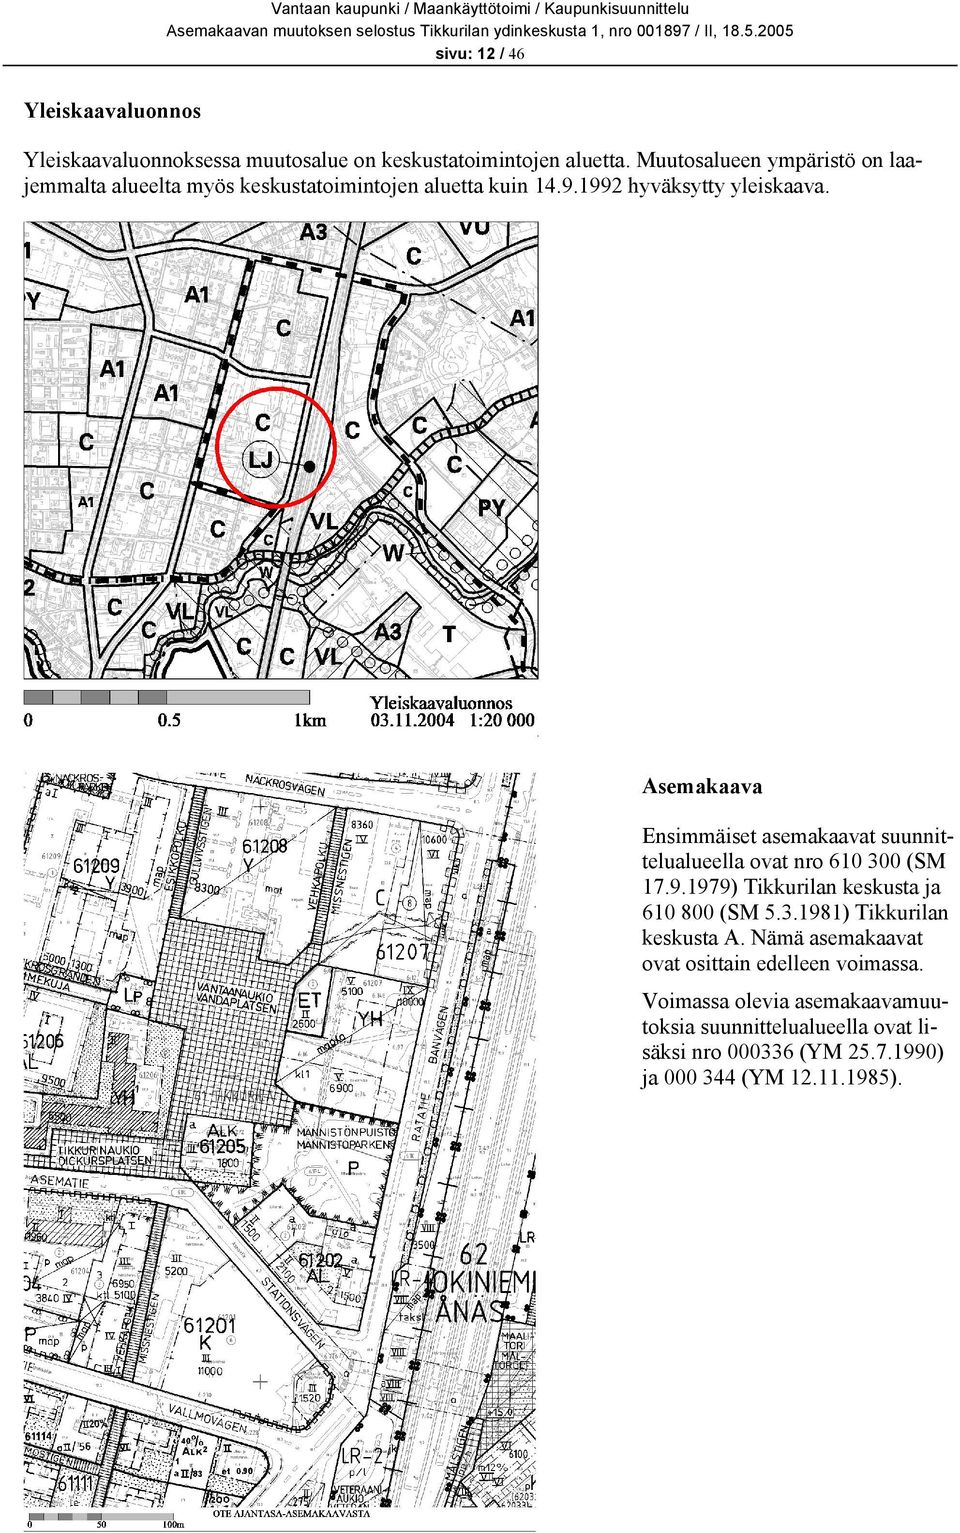 Asemakaava Ensimmäiset asemakaavat suunnittelualueella ovat nro 610 300 (SM 17.9.1979) Tikkurilan keskusta ja 610 800 (SM 5.3.1981) Tikkurilan keskusta A.